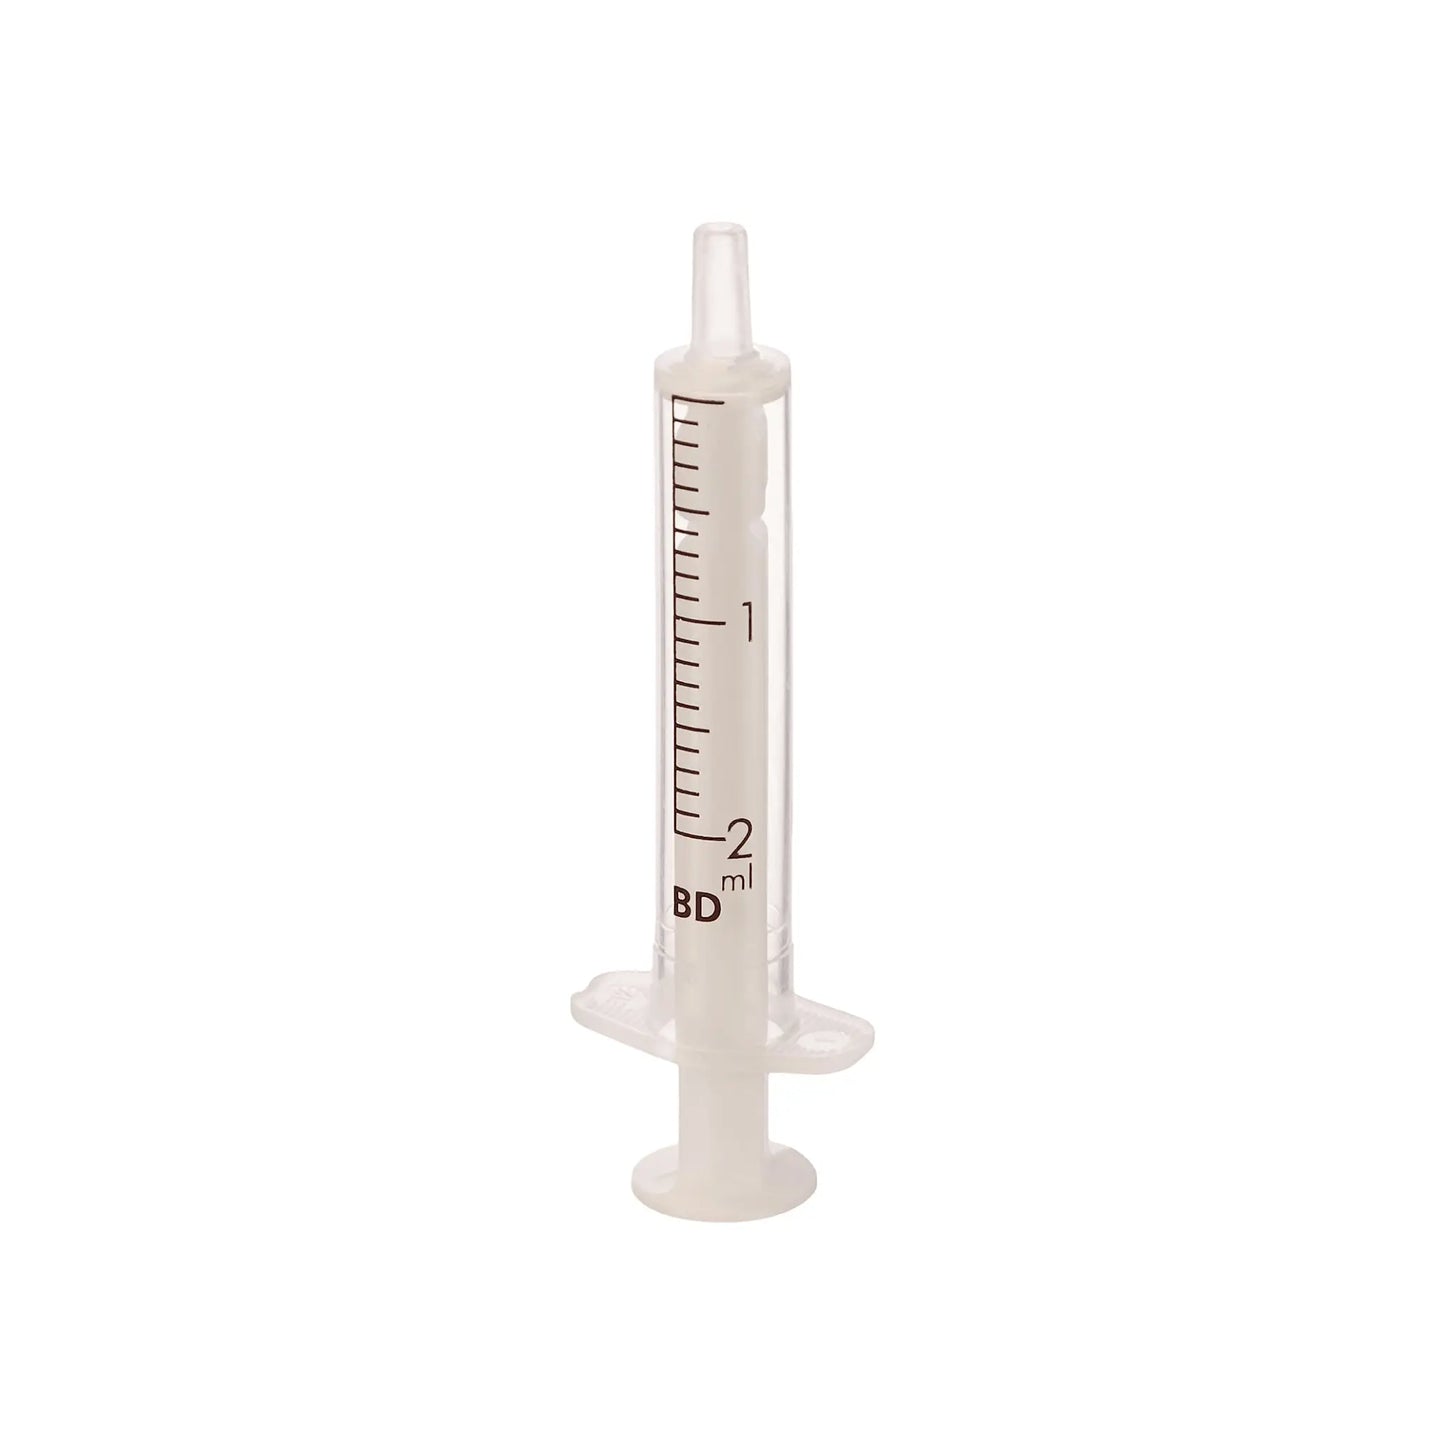 BD 2ml Luer Slip Disposable 100 Syringes